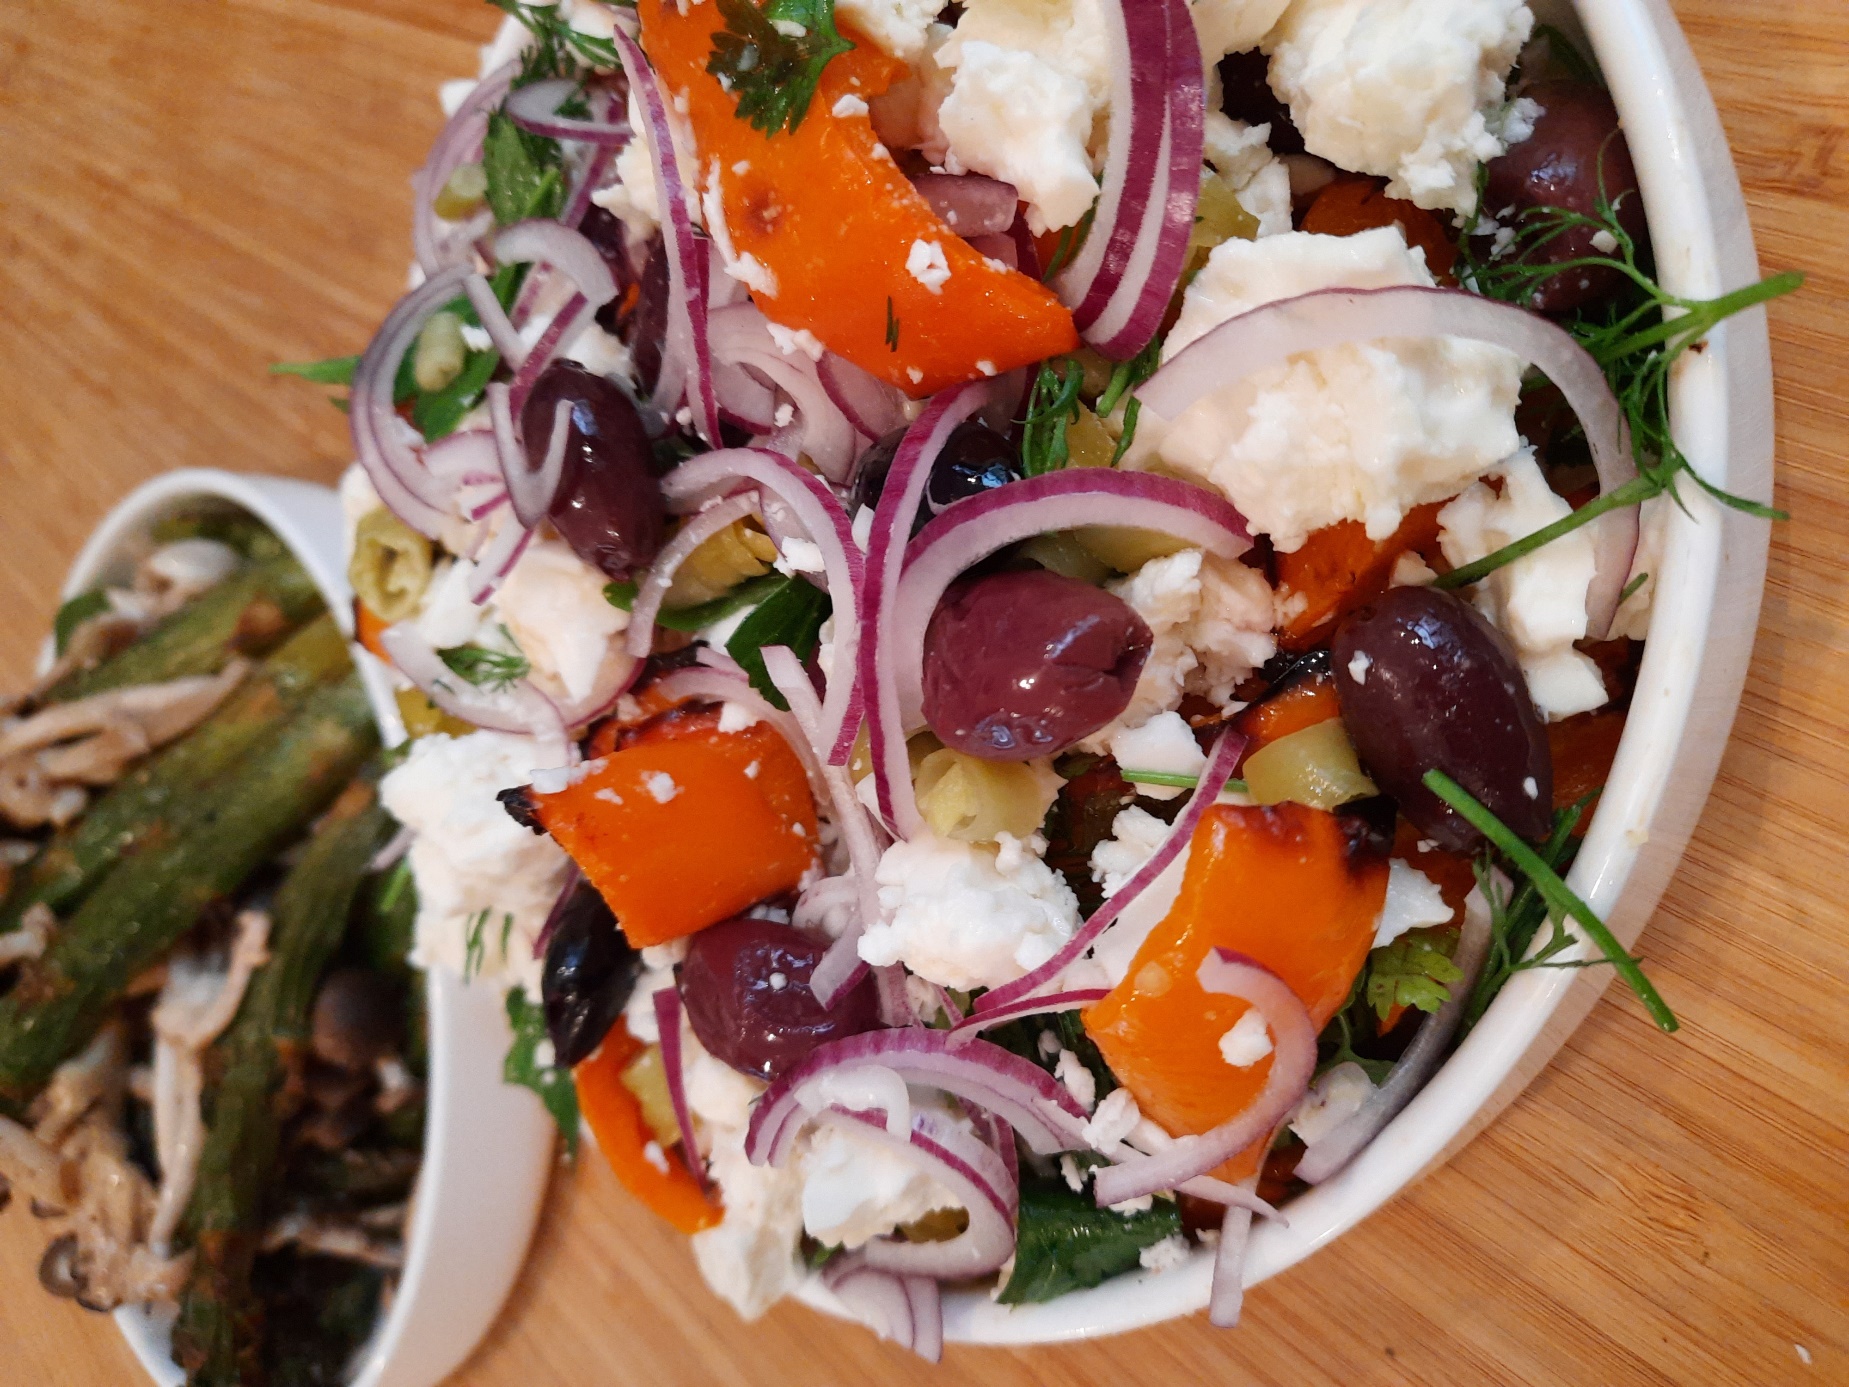 Afbeelding met voedsel, bord, groente, salade

Automatisch gegenereerde beschrijving